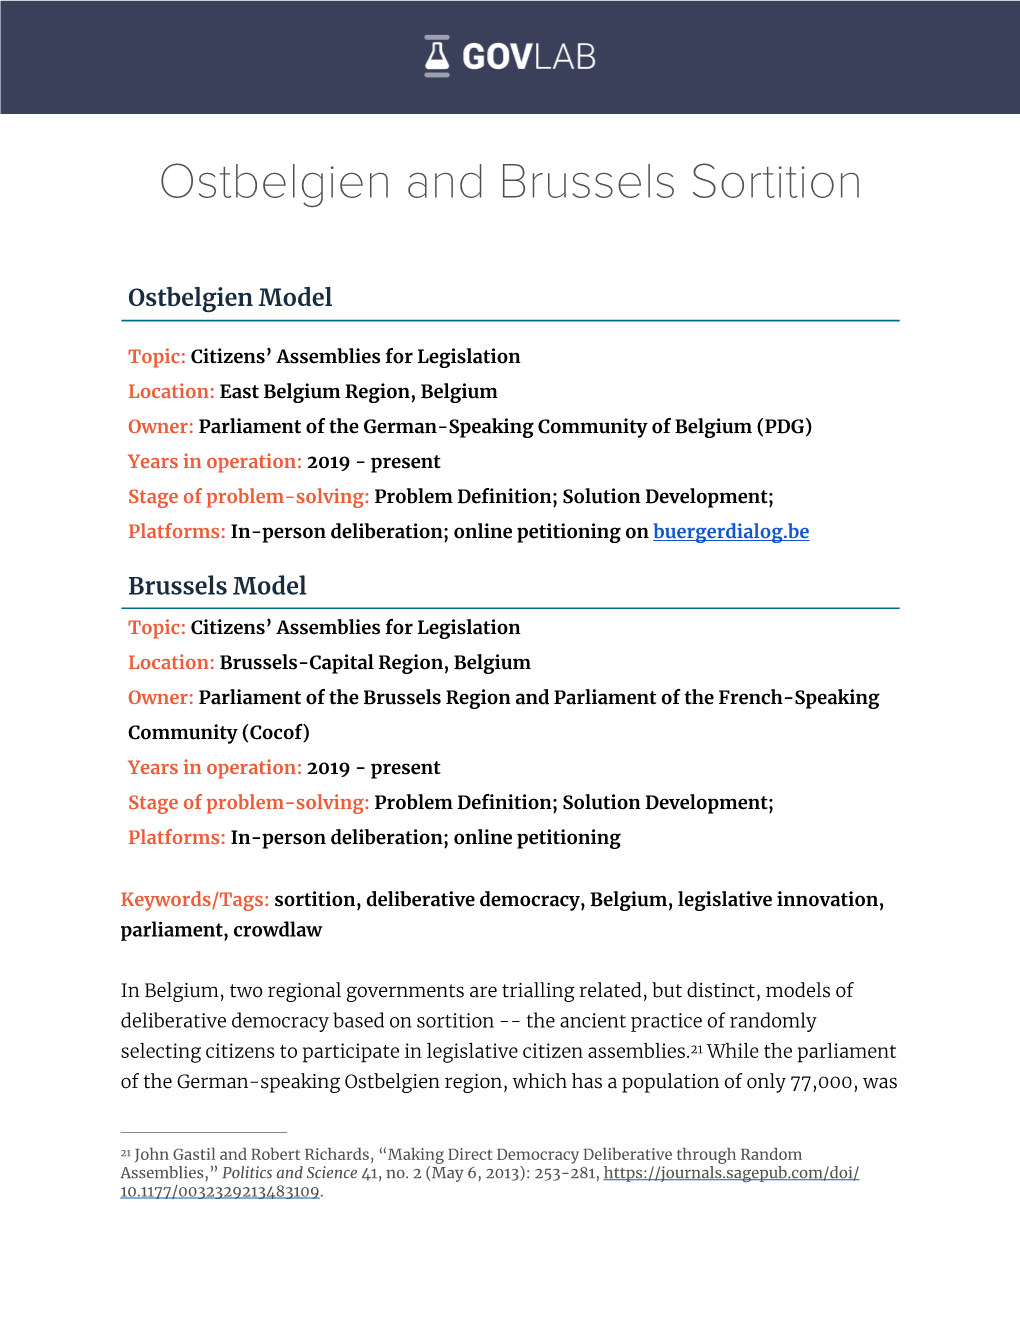 Ostbelgien and Brussels Sortition